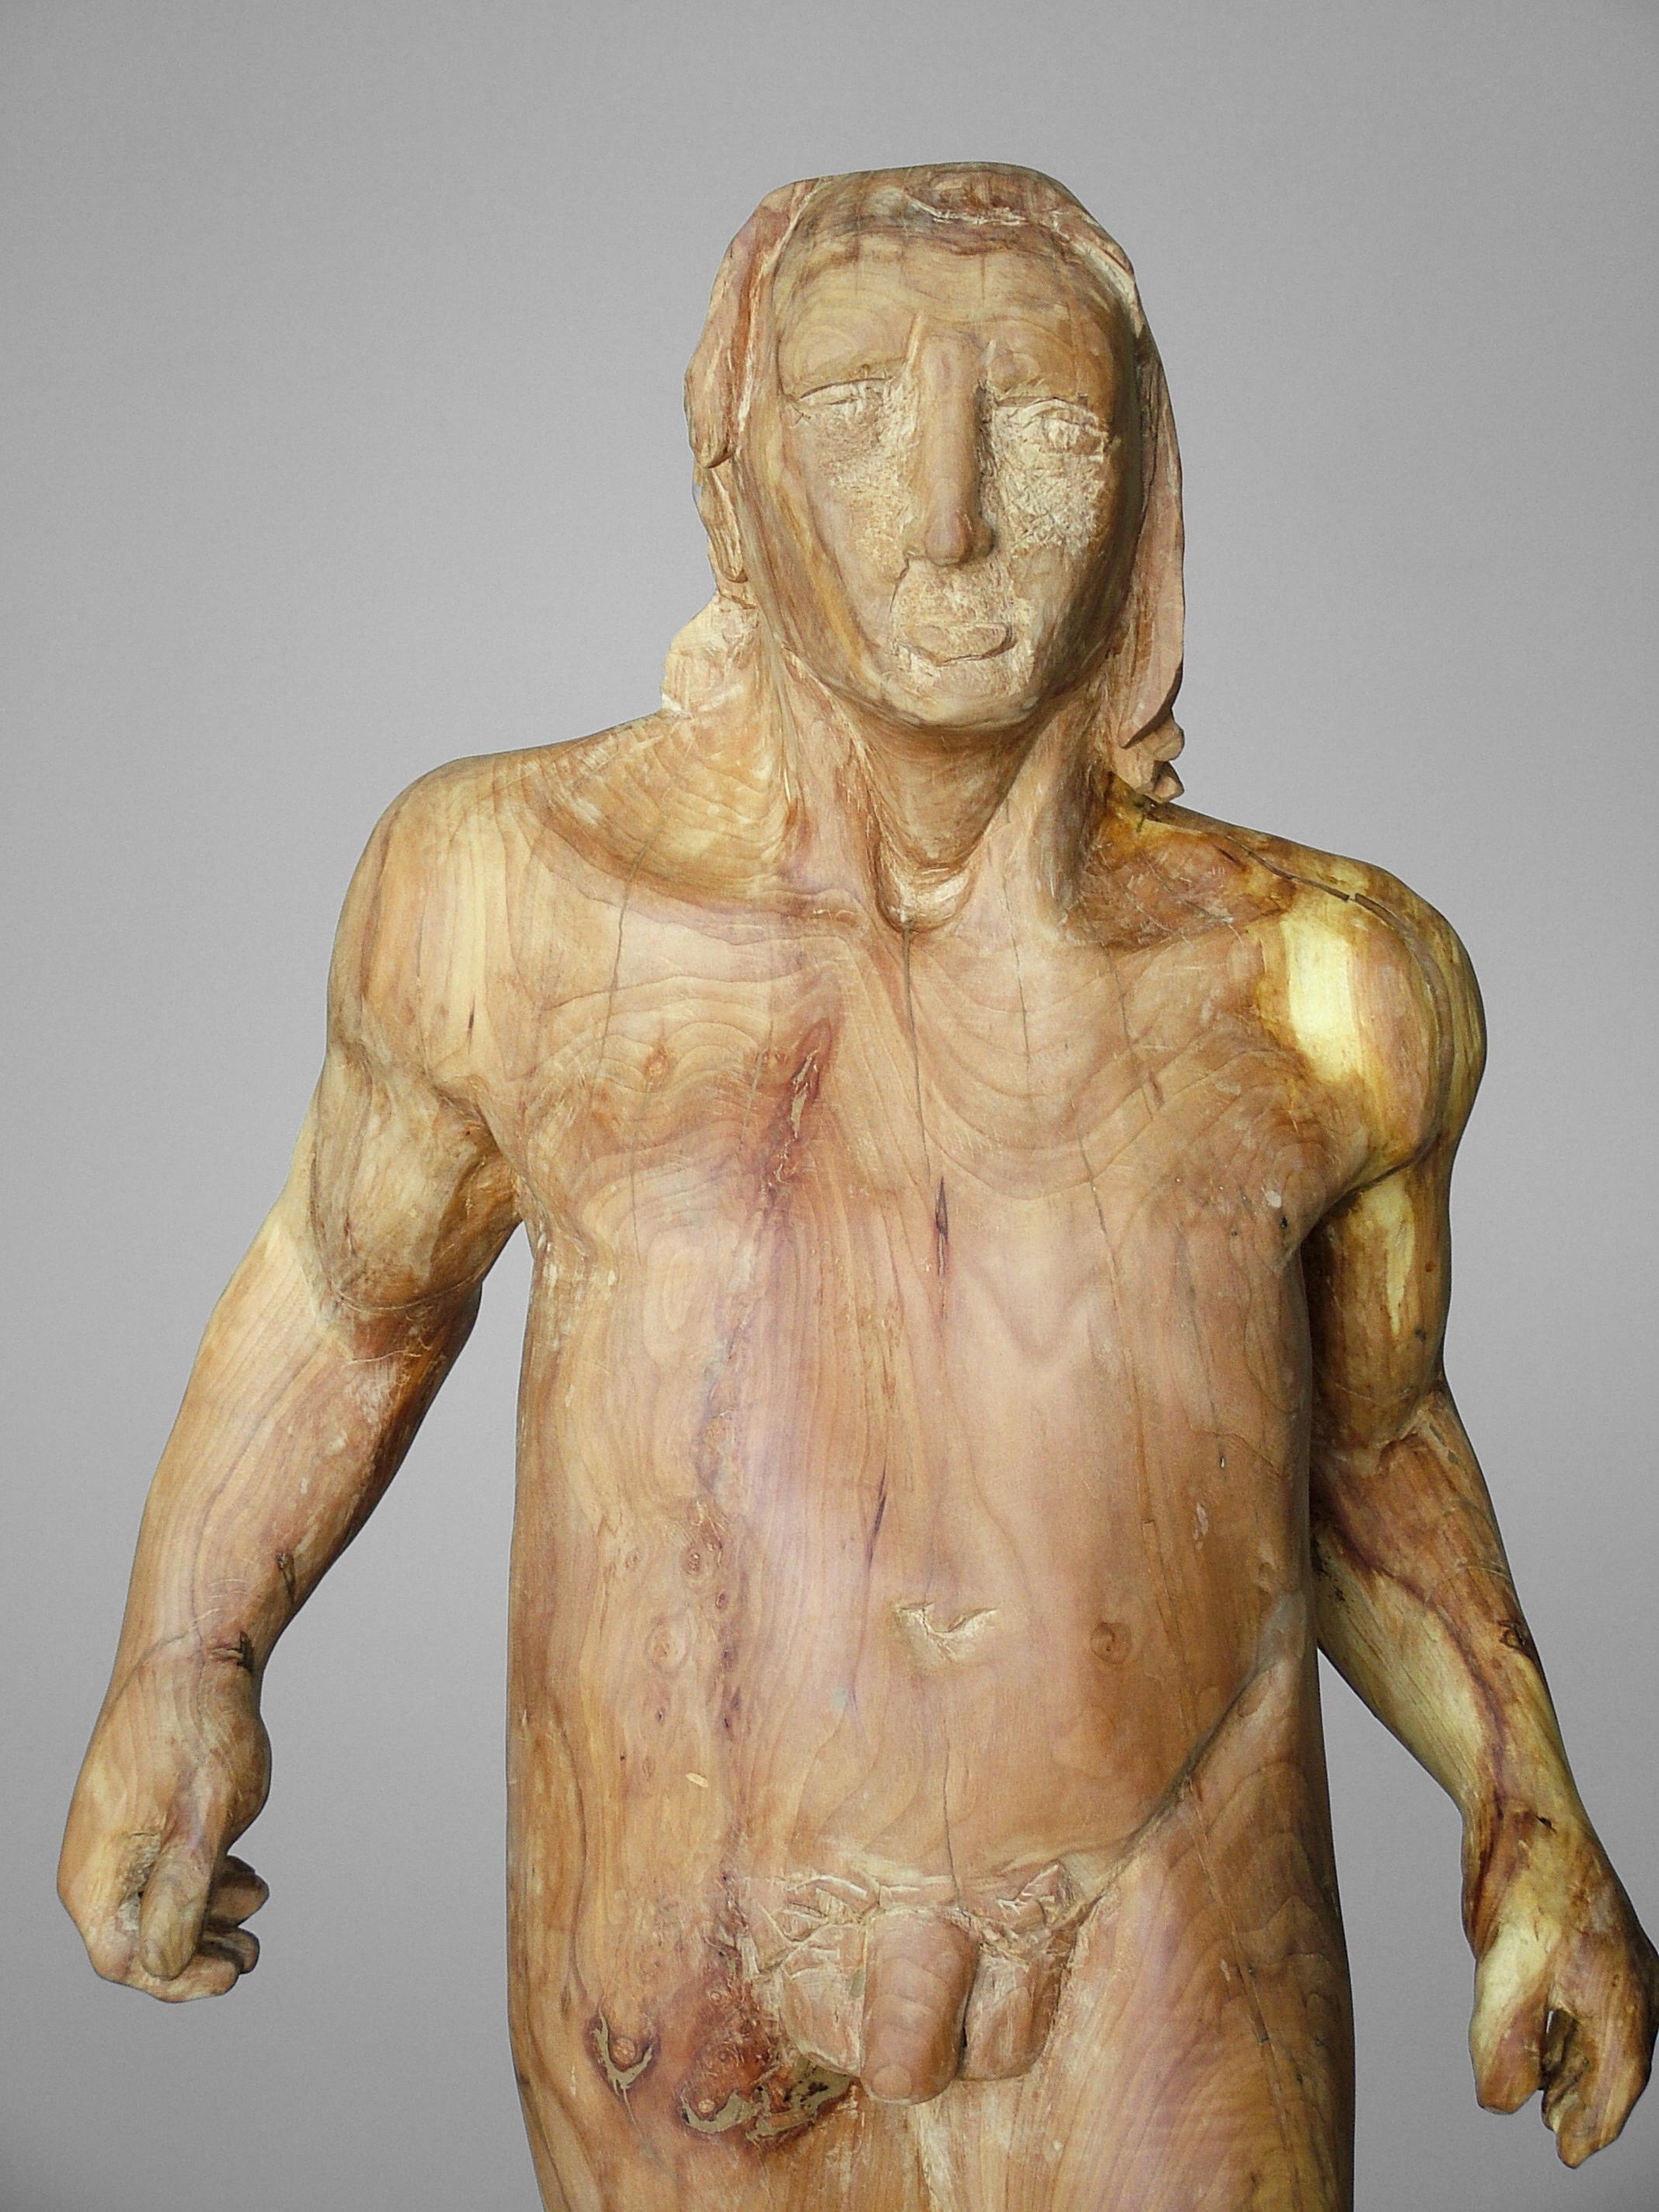 Skulptur des spanischen Künstlers AMANCIO GONZALEZ
Holz einzigartig
Fantastisches Kunstwerk der spanischen Bildhauerei
Amancio González ist ein Bildhauer aus Leon und ein international gefeierter Künstler.

Amancios letzte internationale